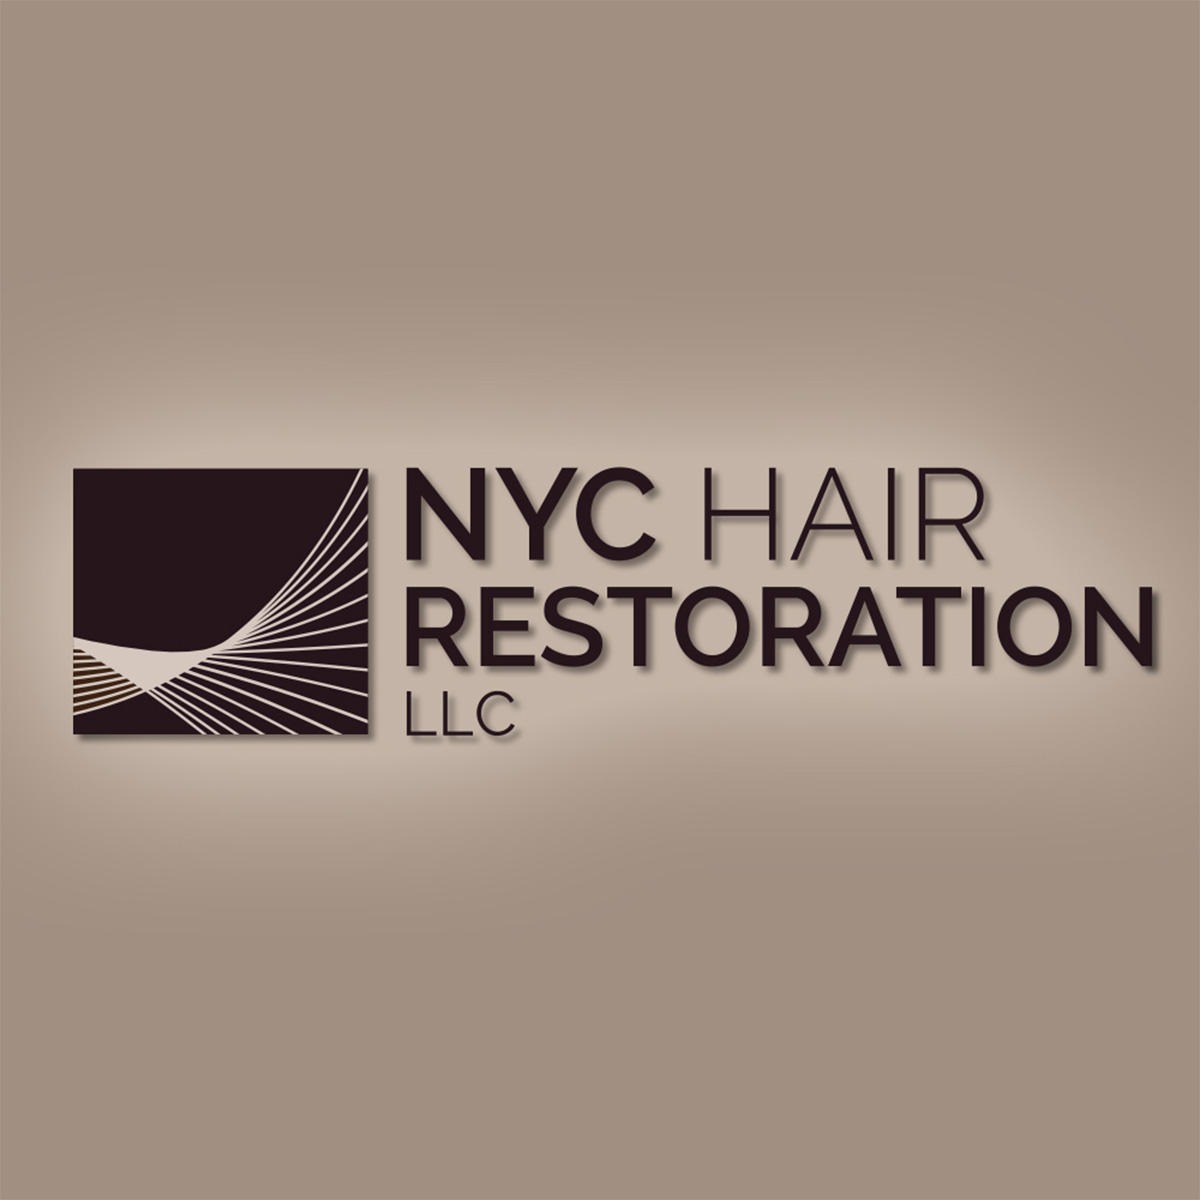 NYC Hair Restoration - New York, NY 10028 - (212)988-1557 | ShowMeLocal.com